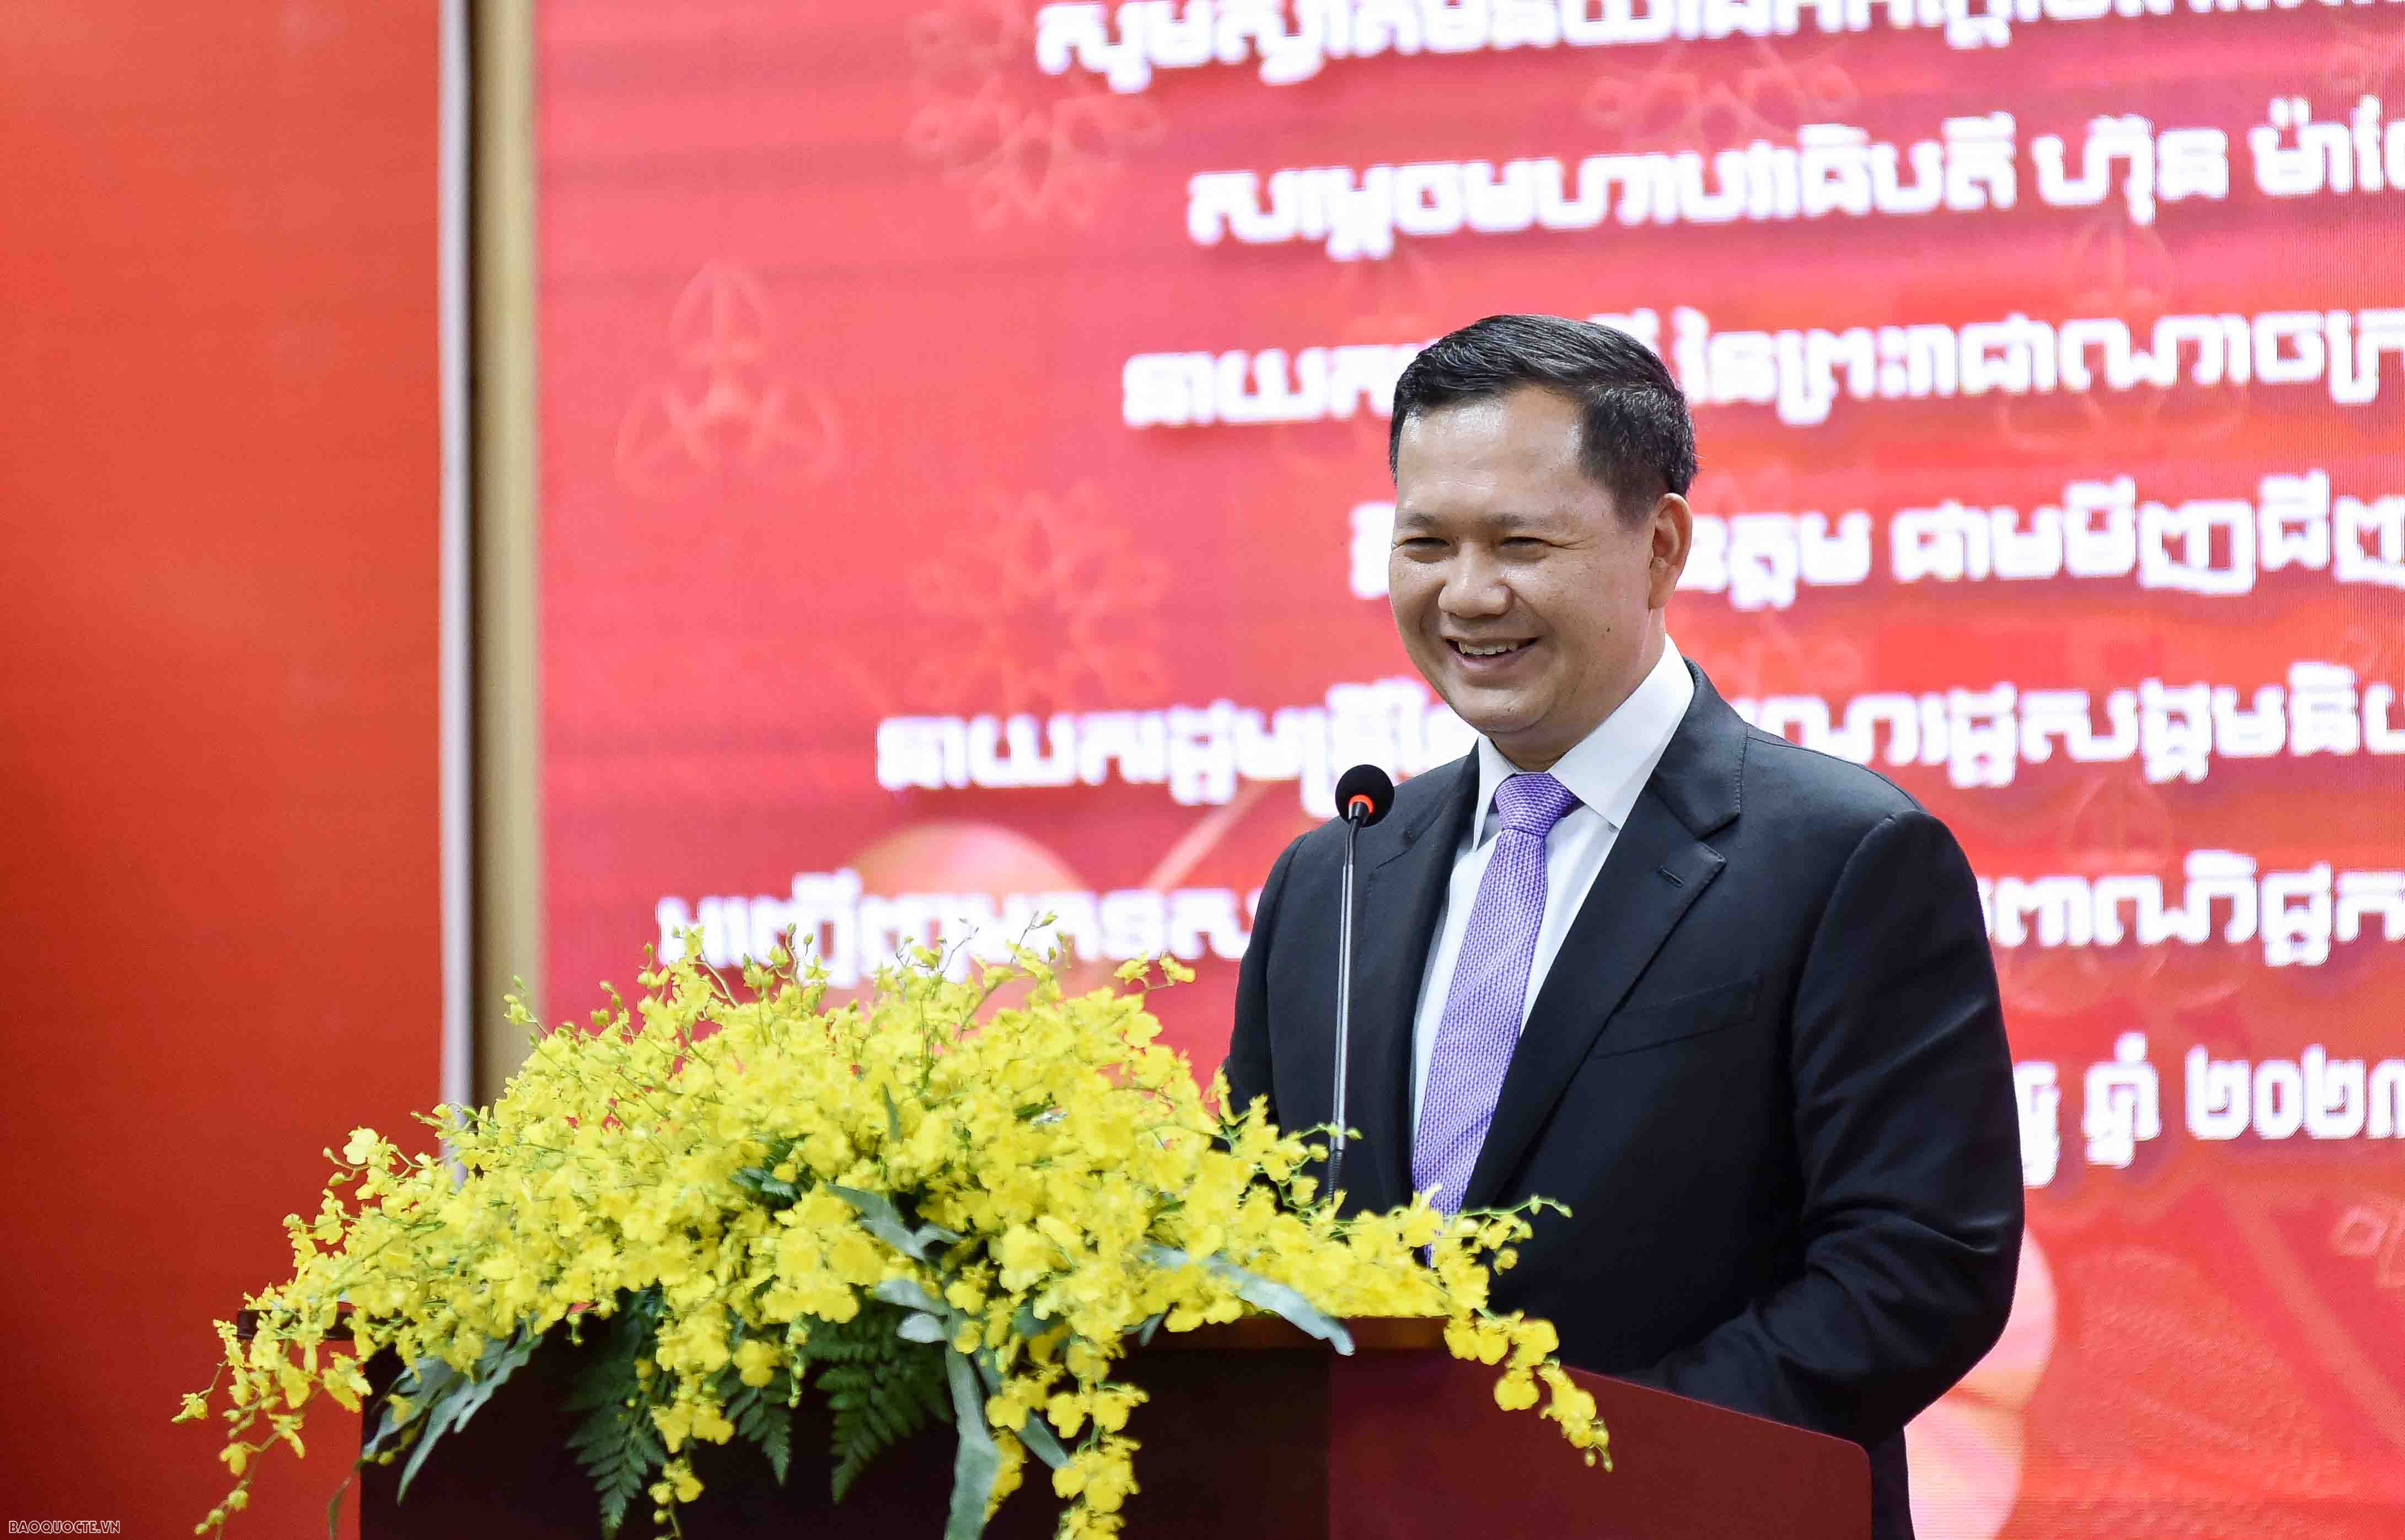 Thủ tướng Campuchia: Không có sức khỏe, kiến thức, năng lực thì đất nước không thể phát triển